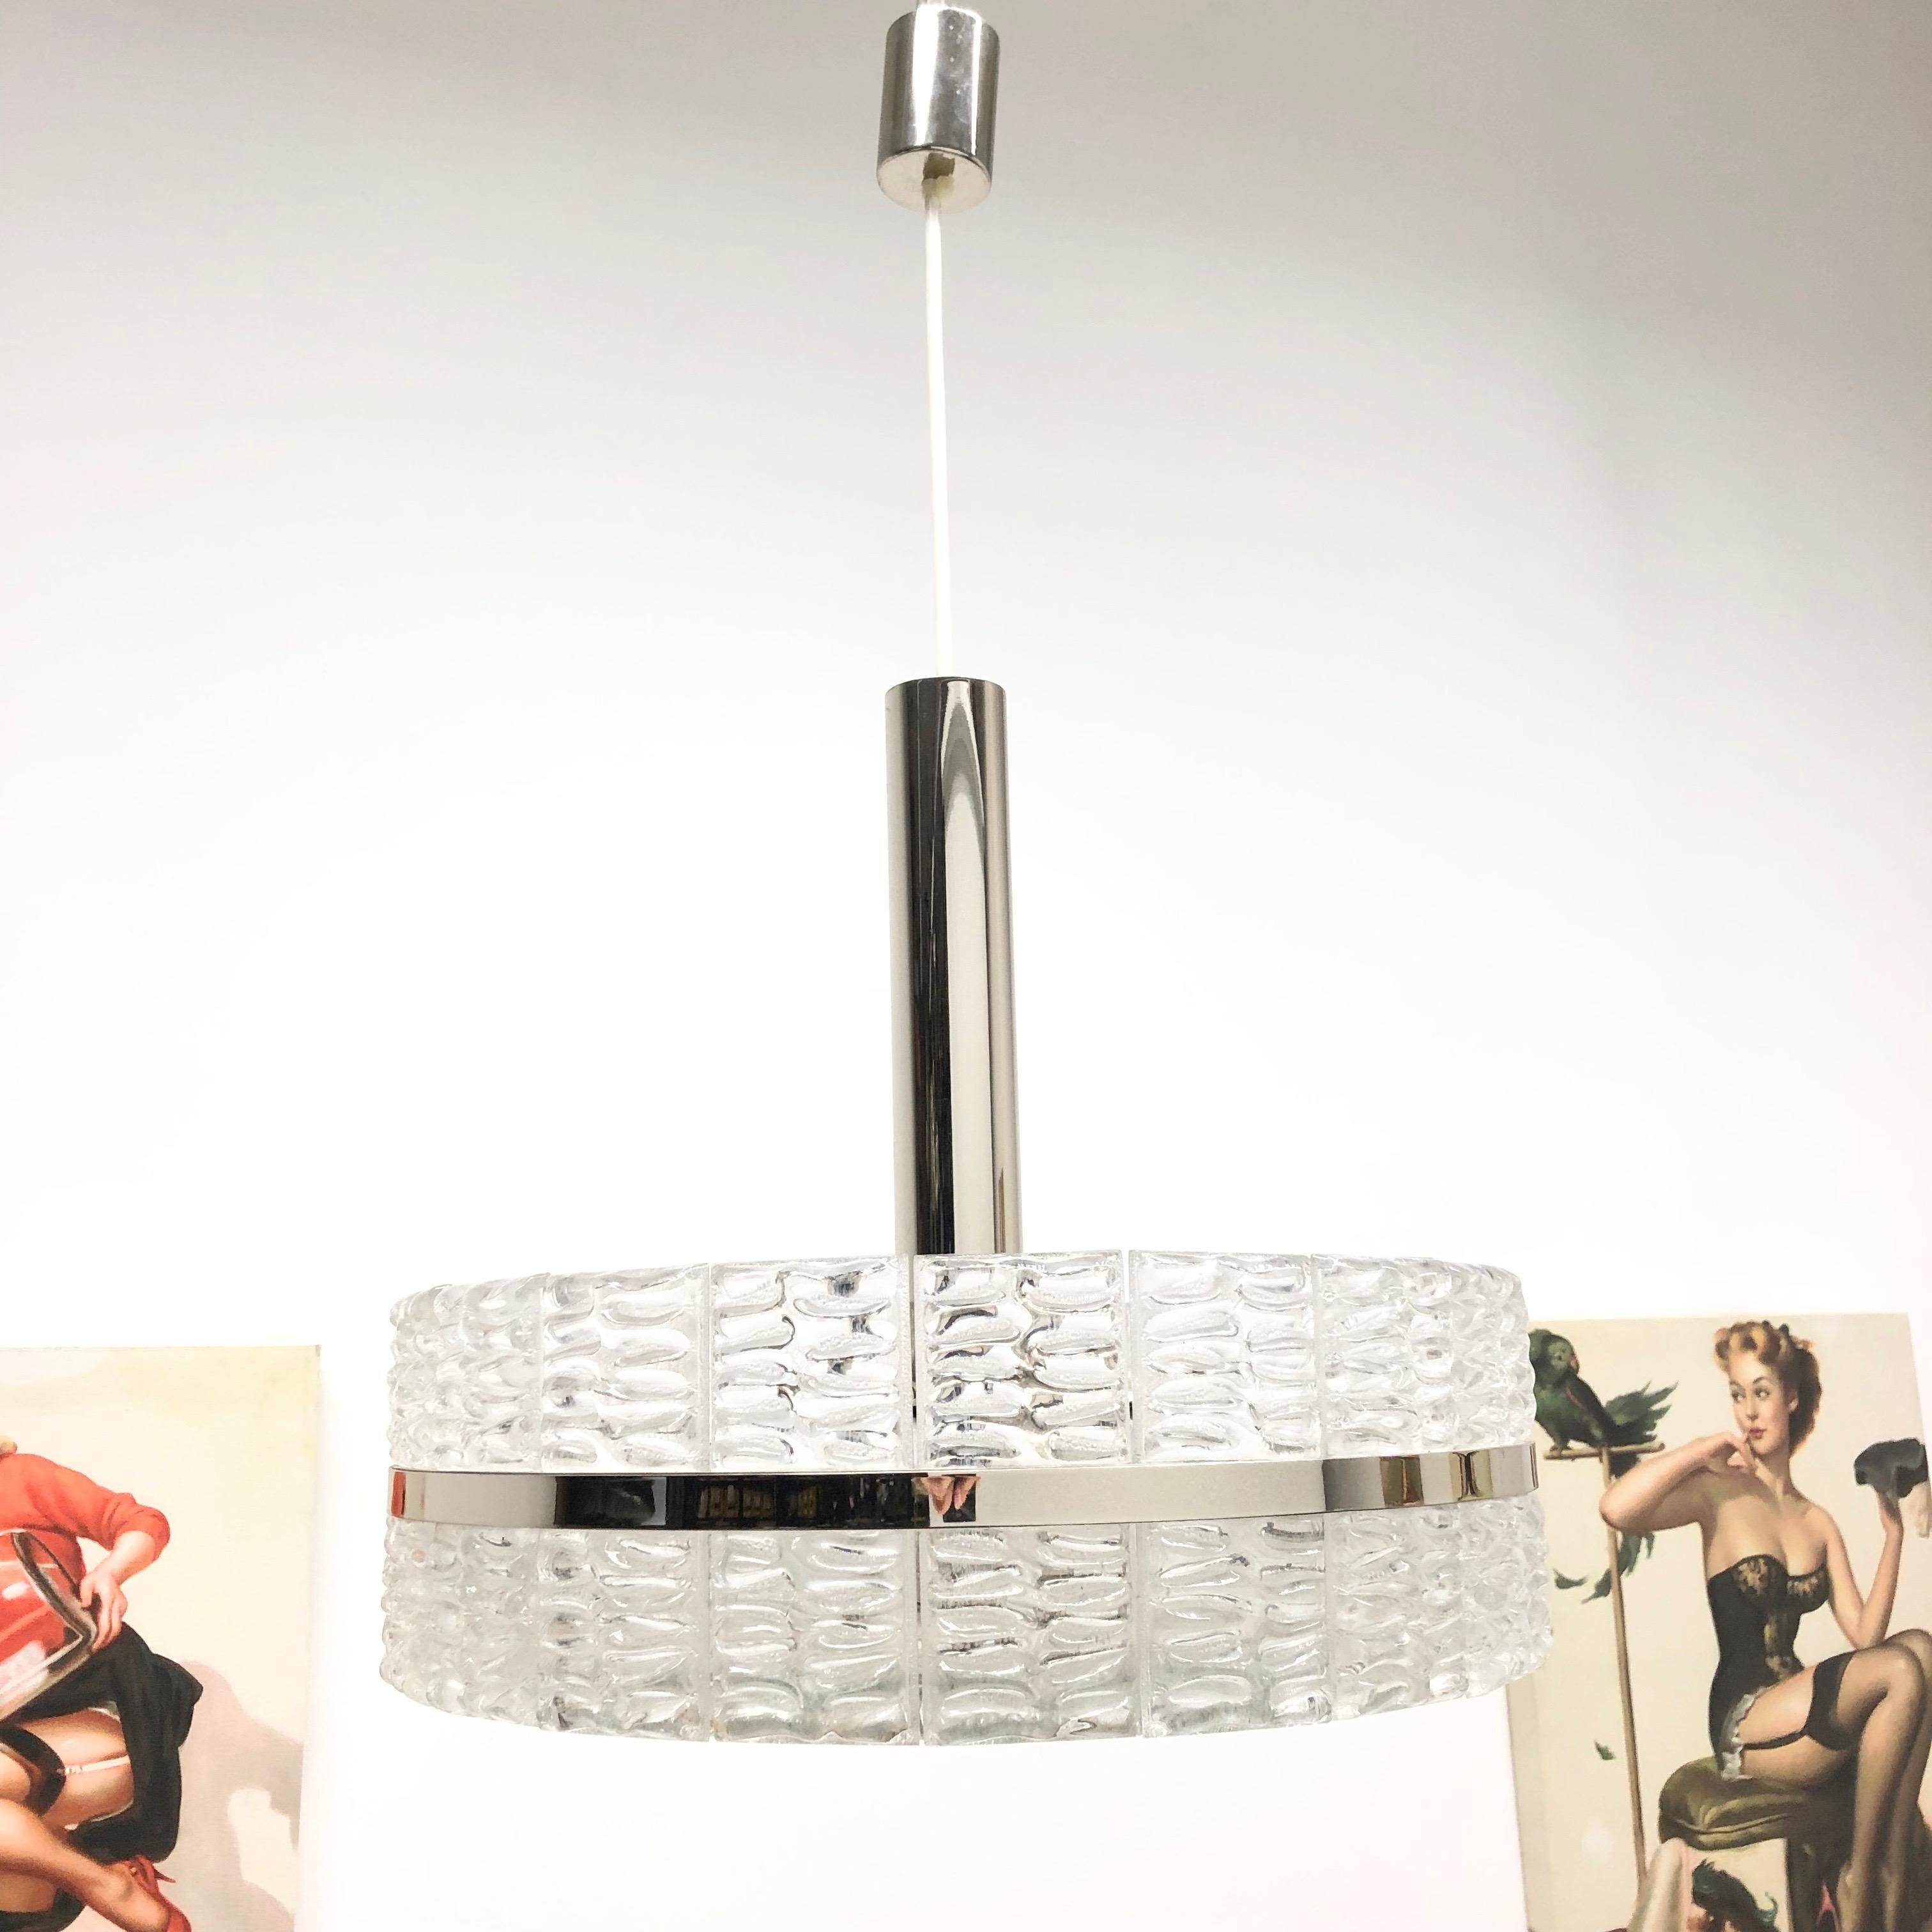 Magnifique lampe suspendue en verre de cristal fabriquée dans les années 1970, magnifique lampe autrichienne en verre de cristal et chrome en bel état vintage. Le lustre nécessite quatre ampoules européennes E27 / 110 volts Edison, chaque ampoule